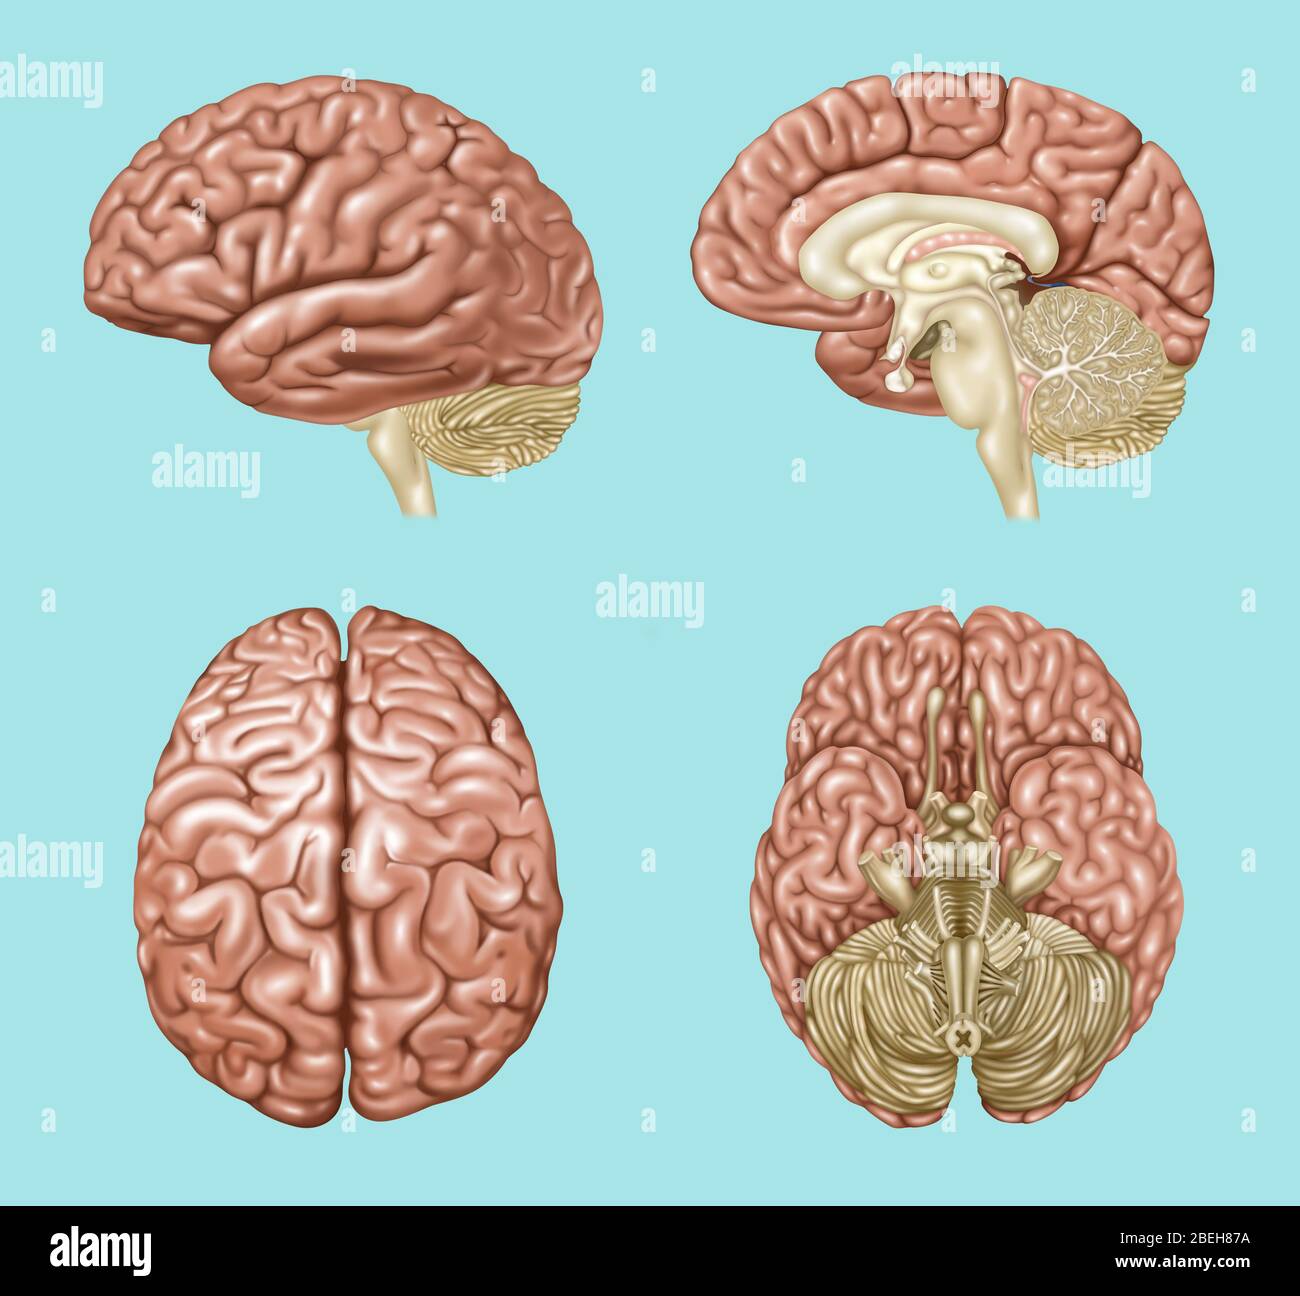 Anatomia cerebrale, illustrazione Foto Stock